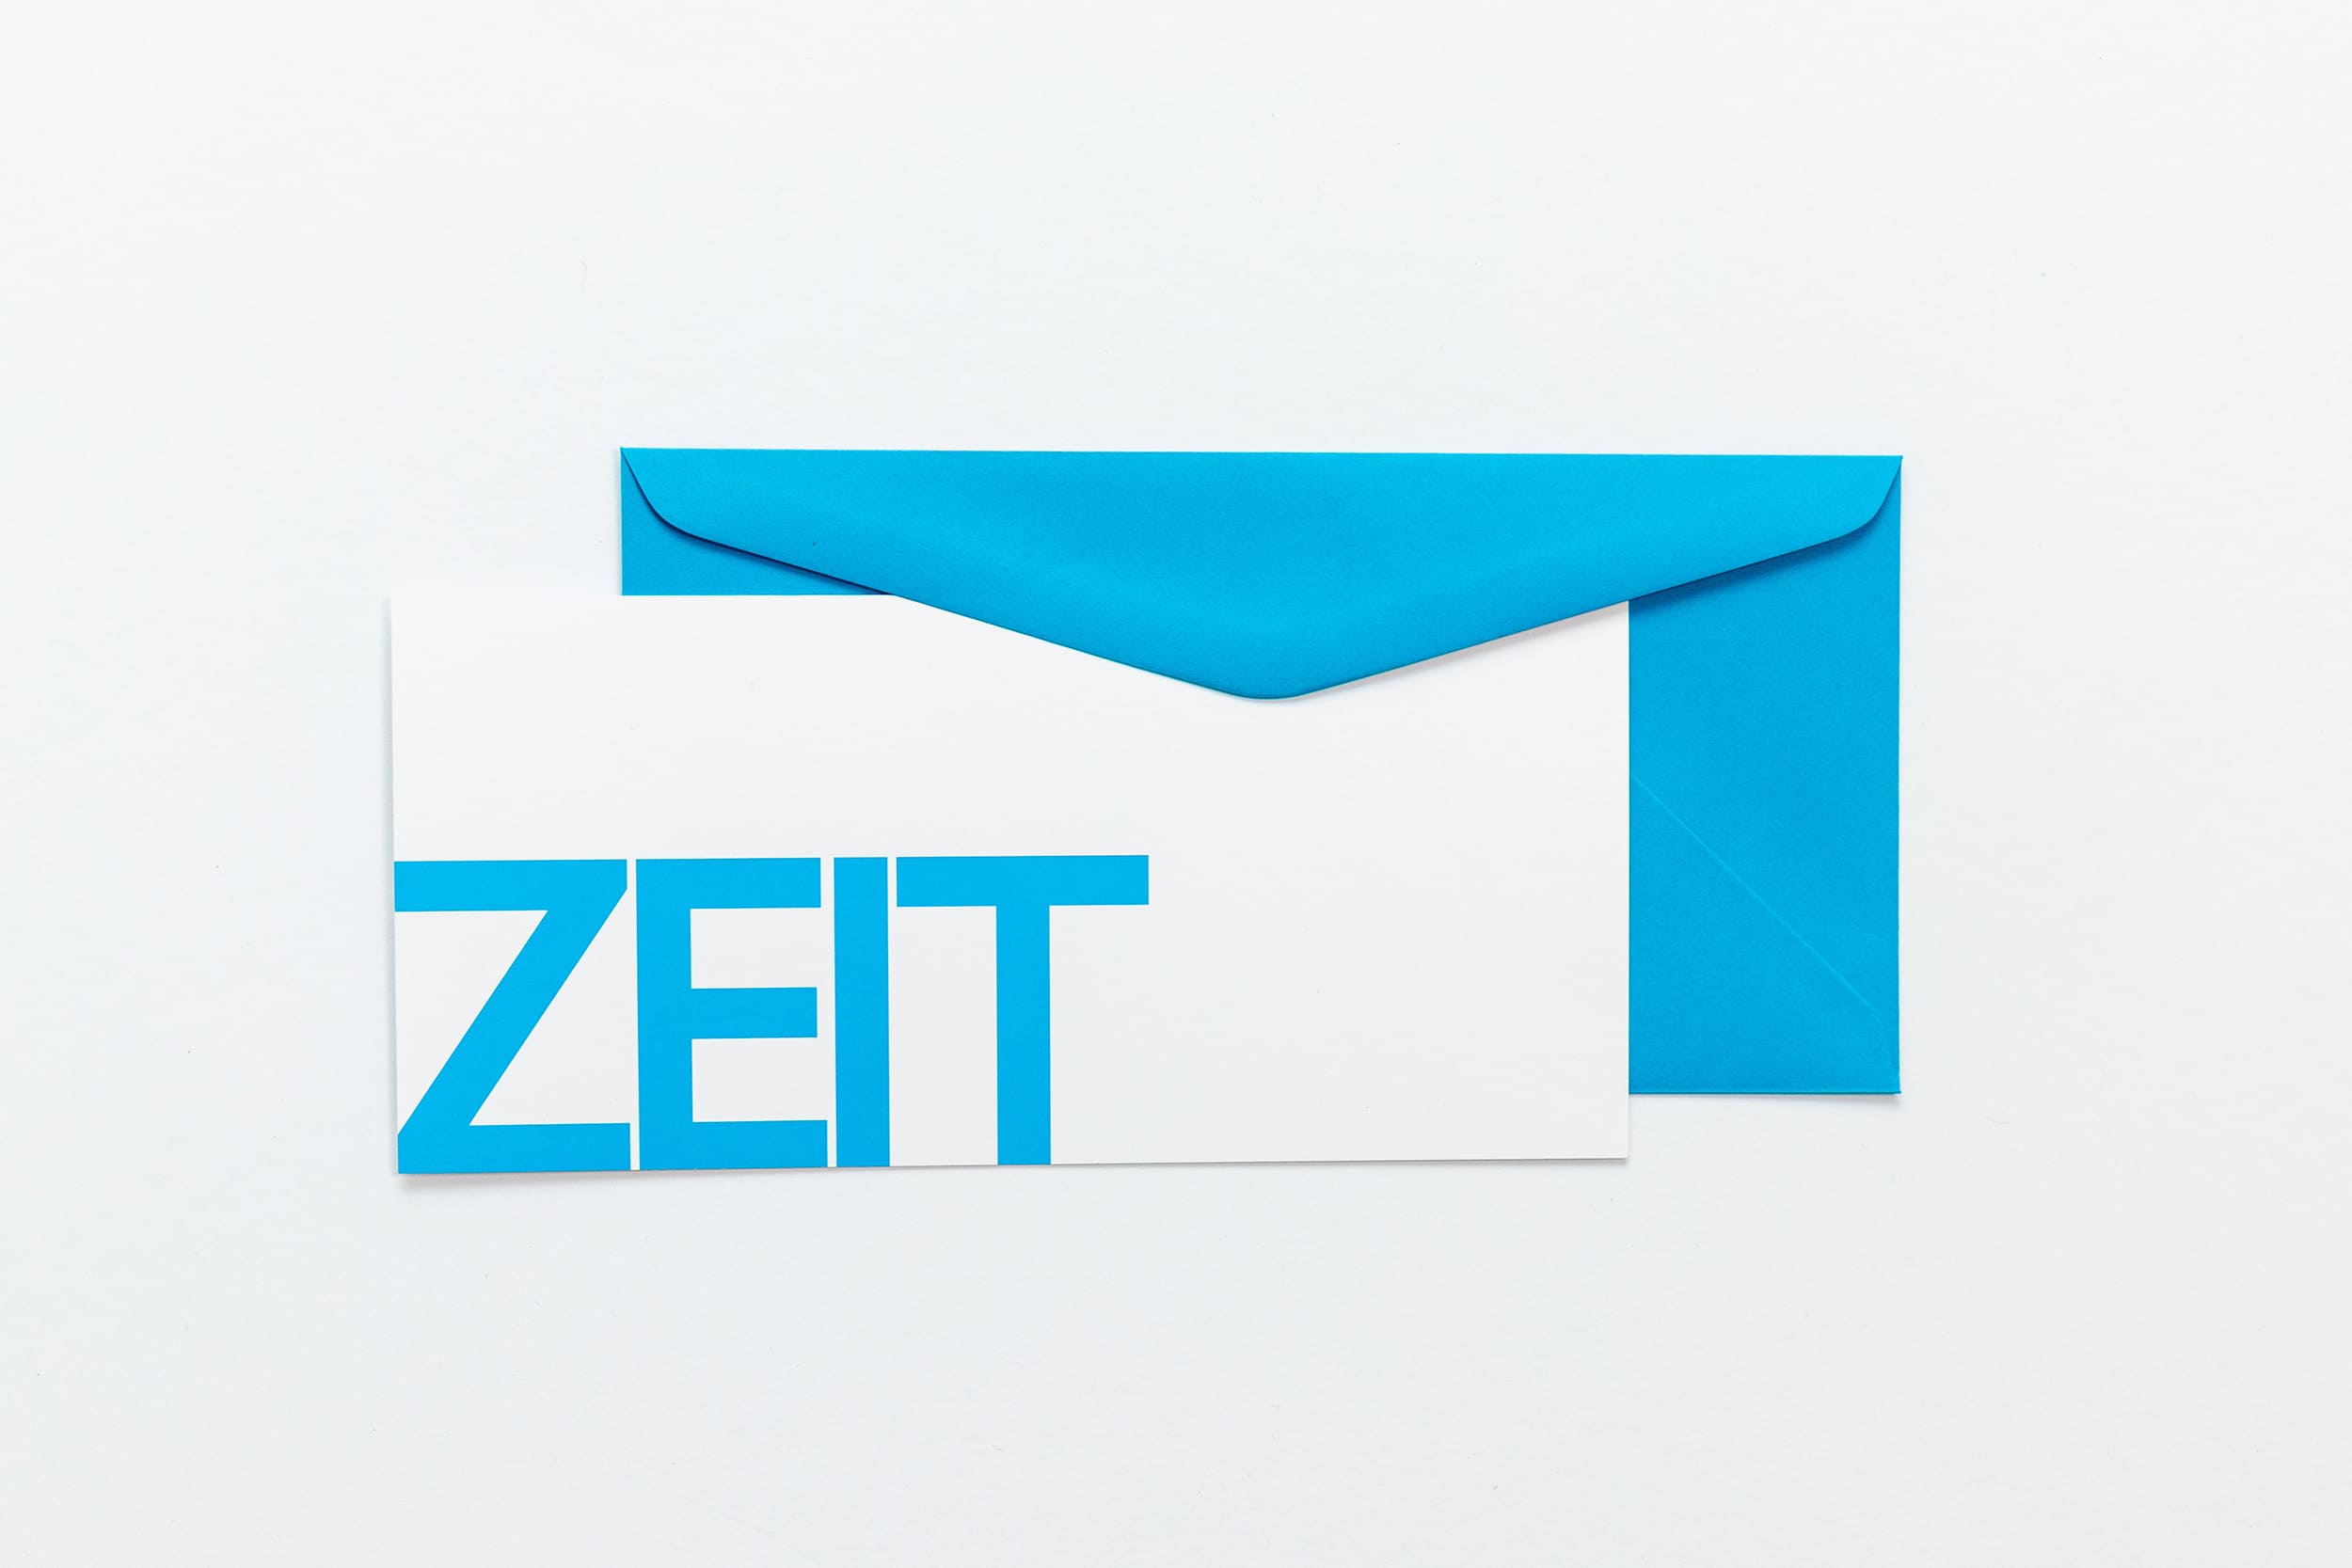 Grußkarte "ZEIT" mit blauem Briefumschlag